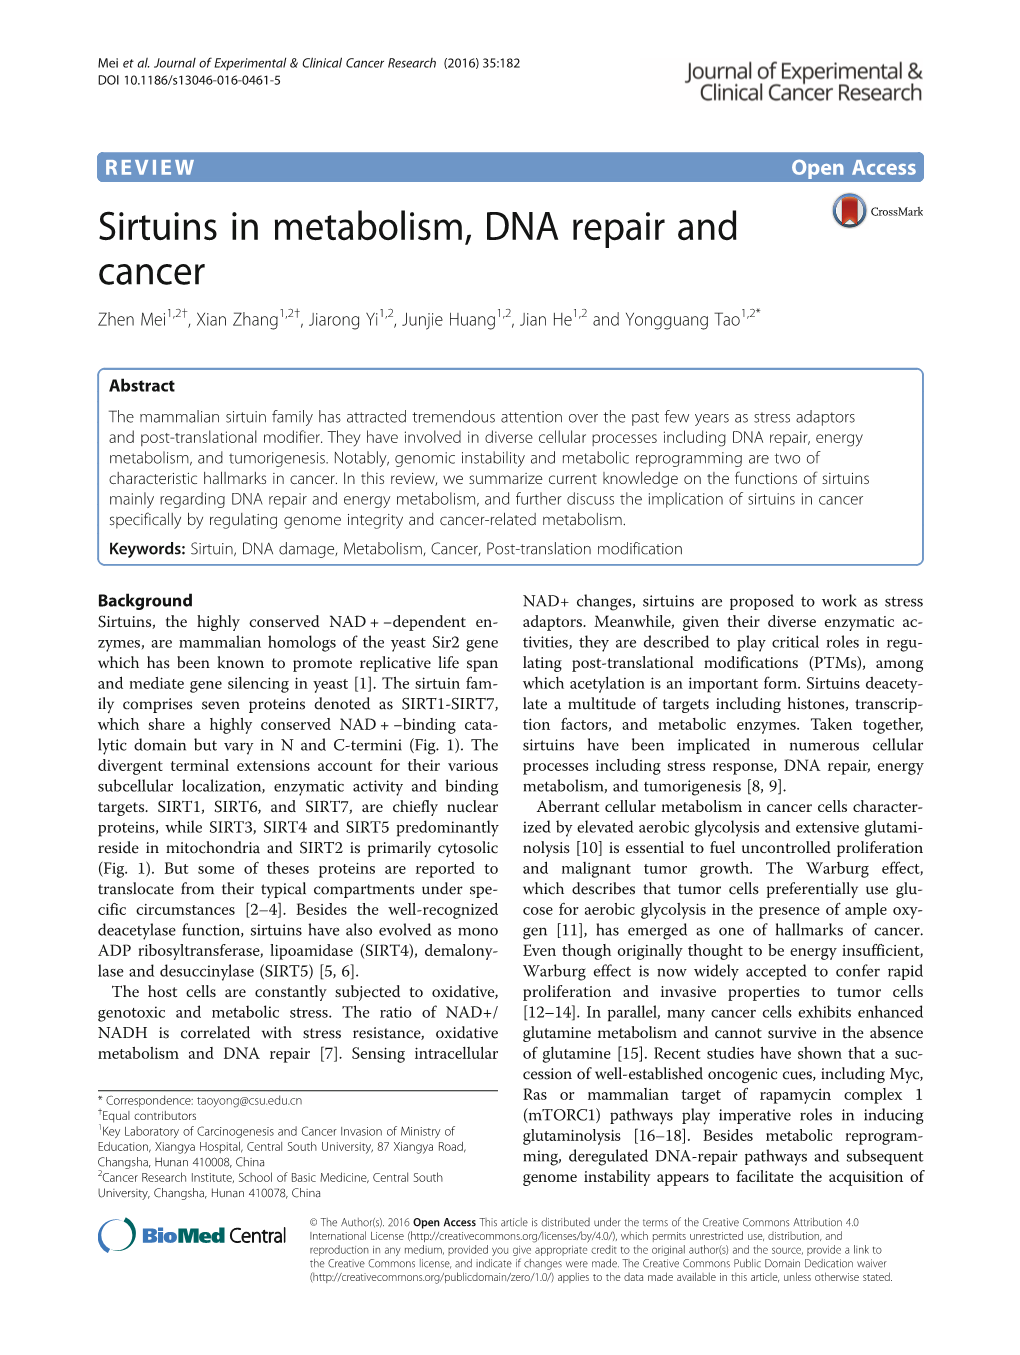 Sirtuins in Metabolism, DNA Repair and Cancer Zhen Mei1,2†, Xian Zhang1,2†, Jiarong Yi1,2, Junjie Huang1,2, Jian He1,2 and Yongguang Tao1,2*